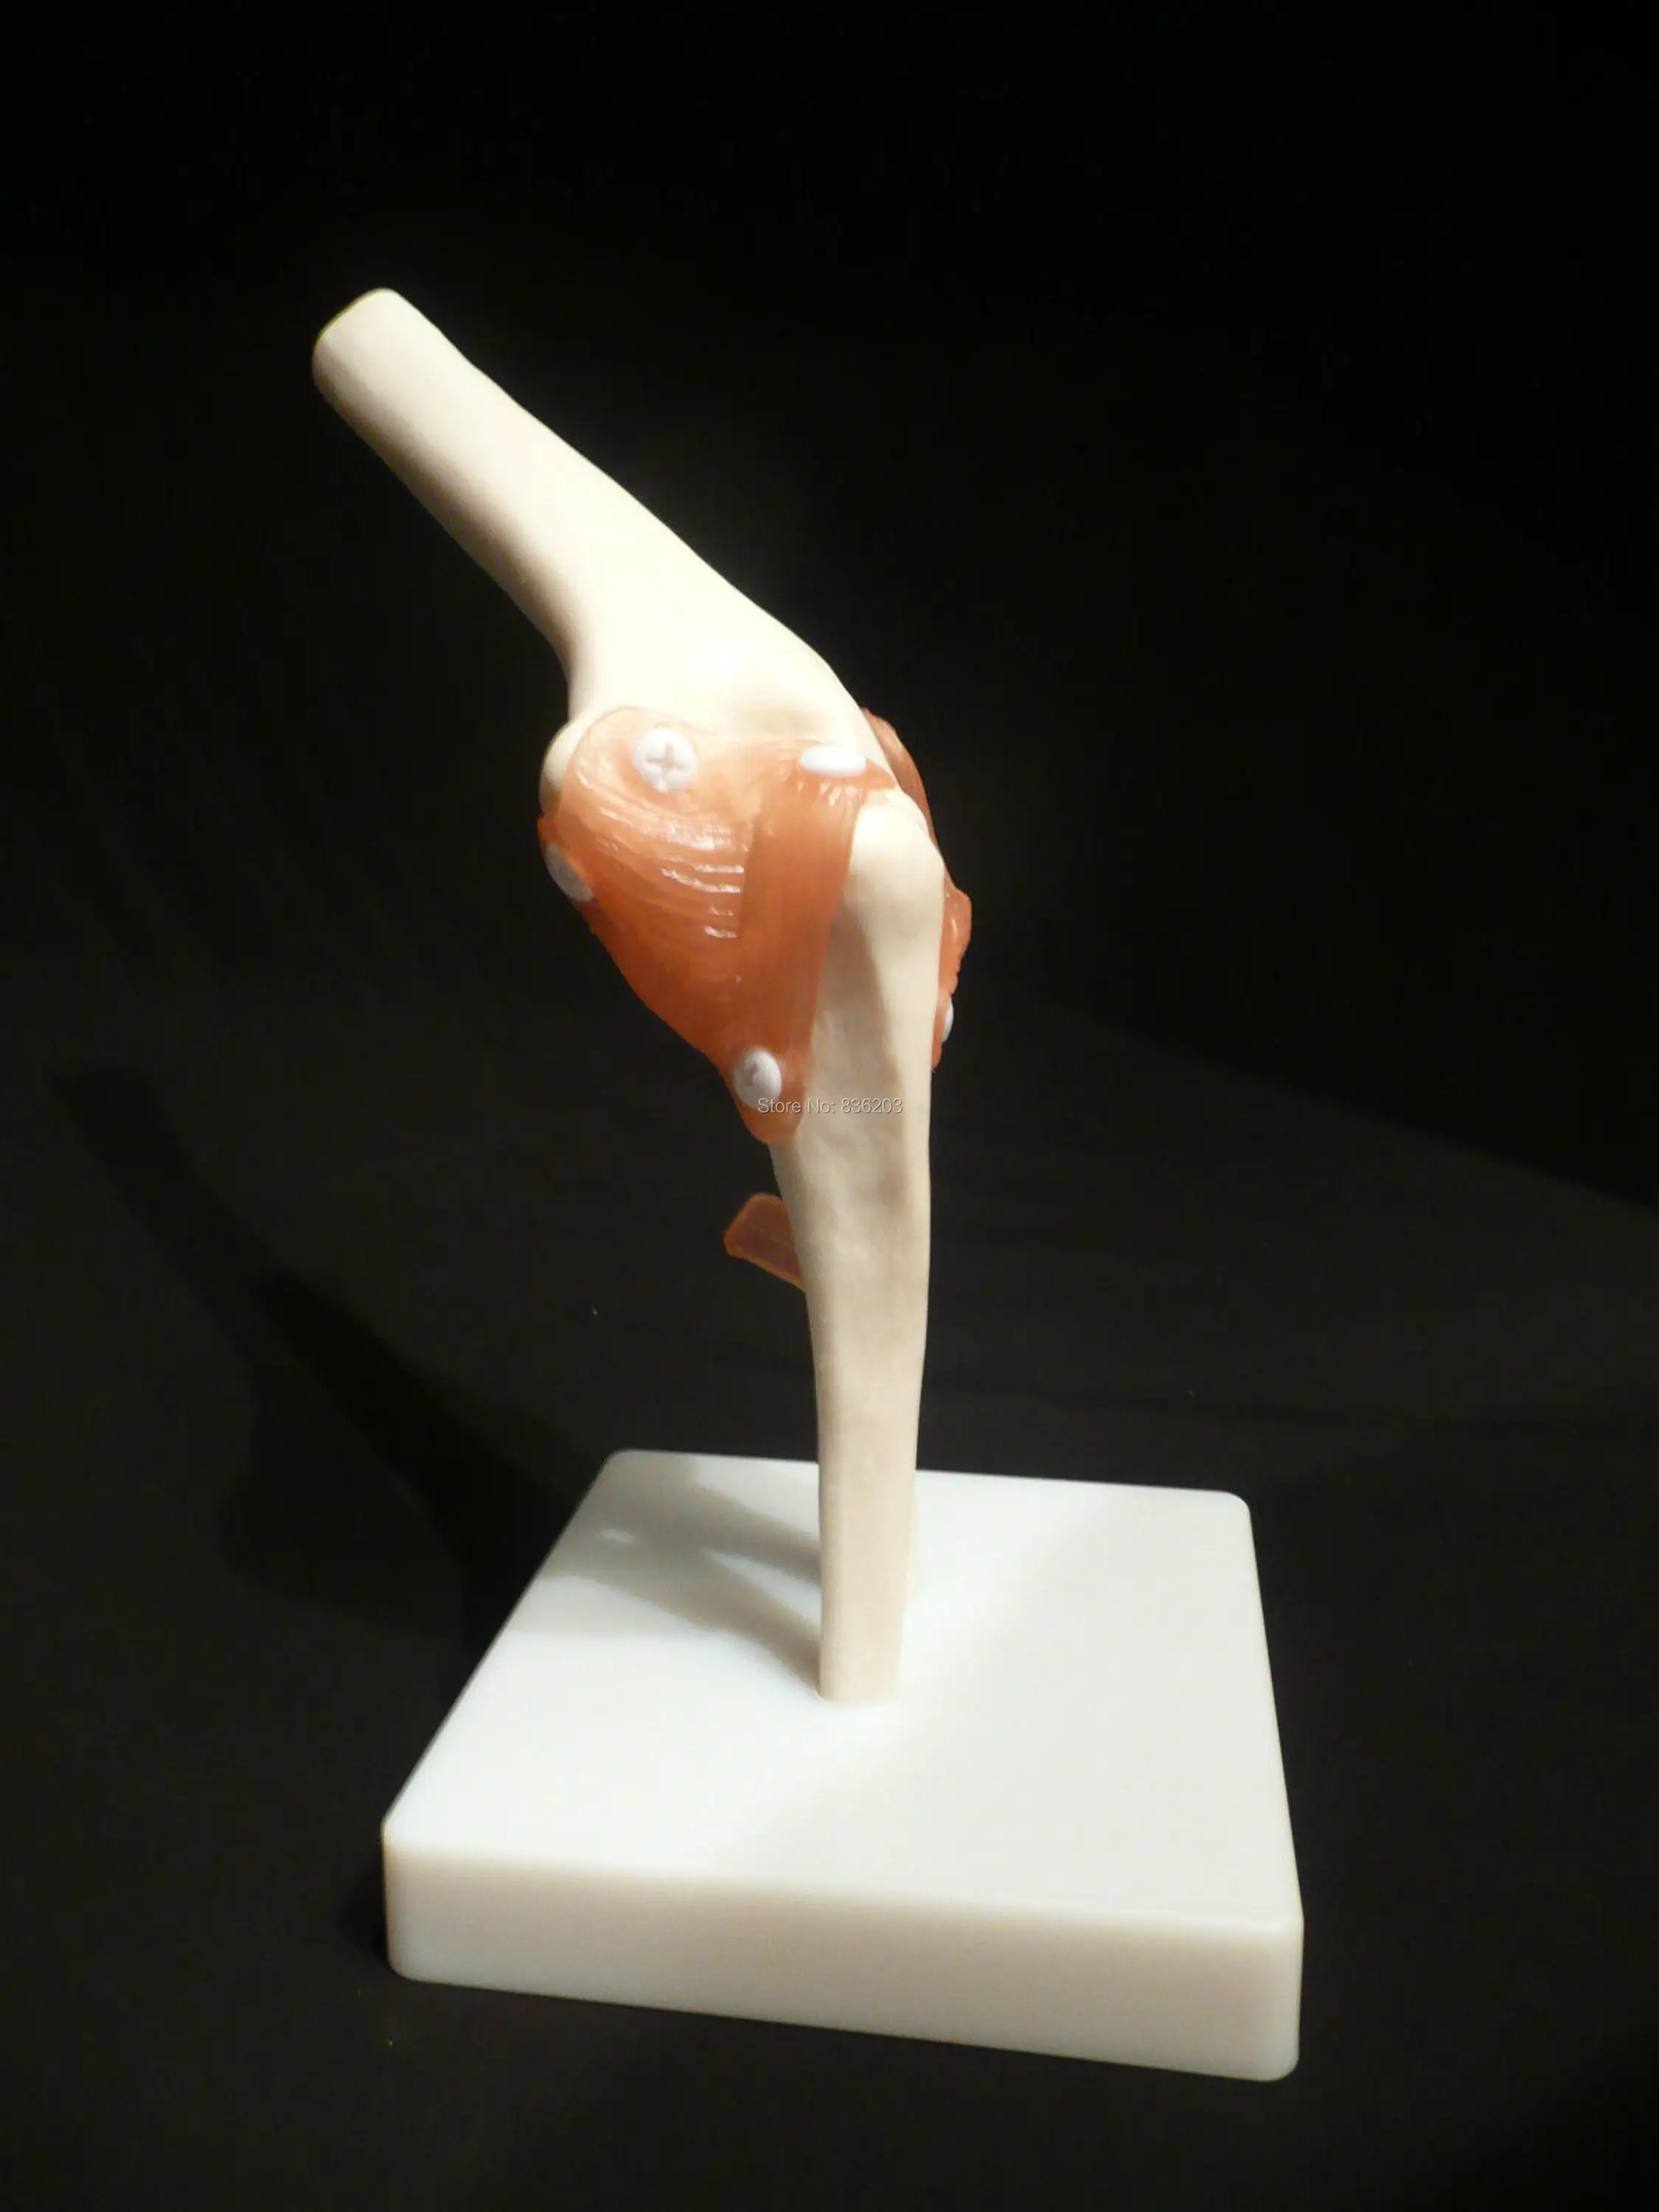 Анатомическая модель в области травм, анатомический скелет, стоматологический анатомический теневой медицинский тренировочный манекен